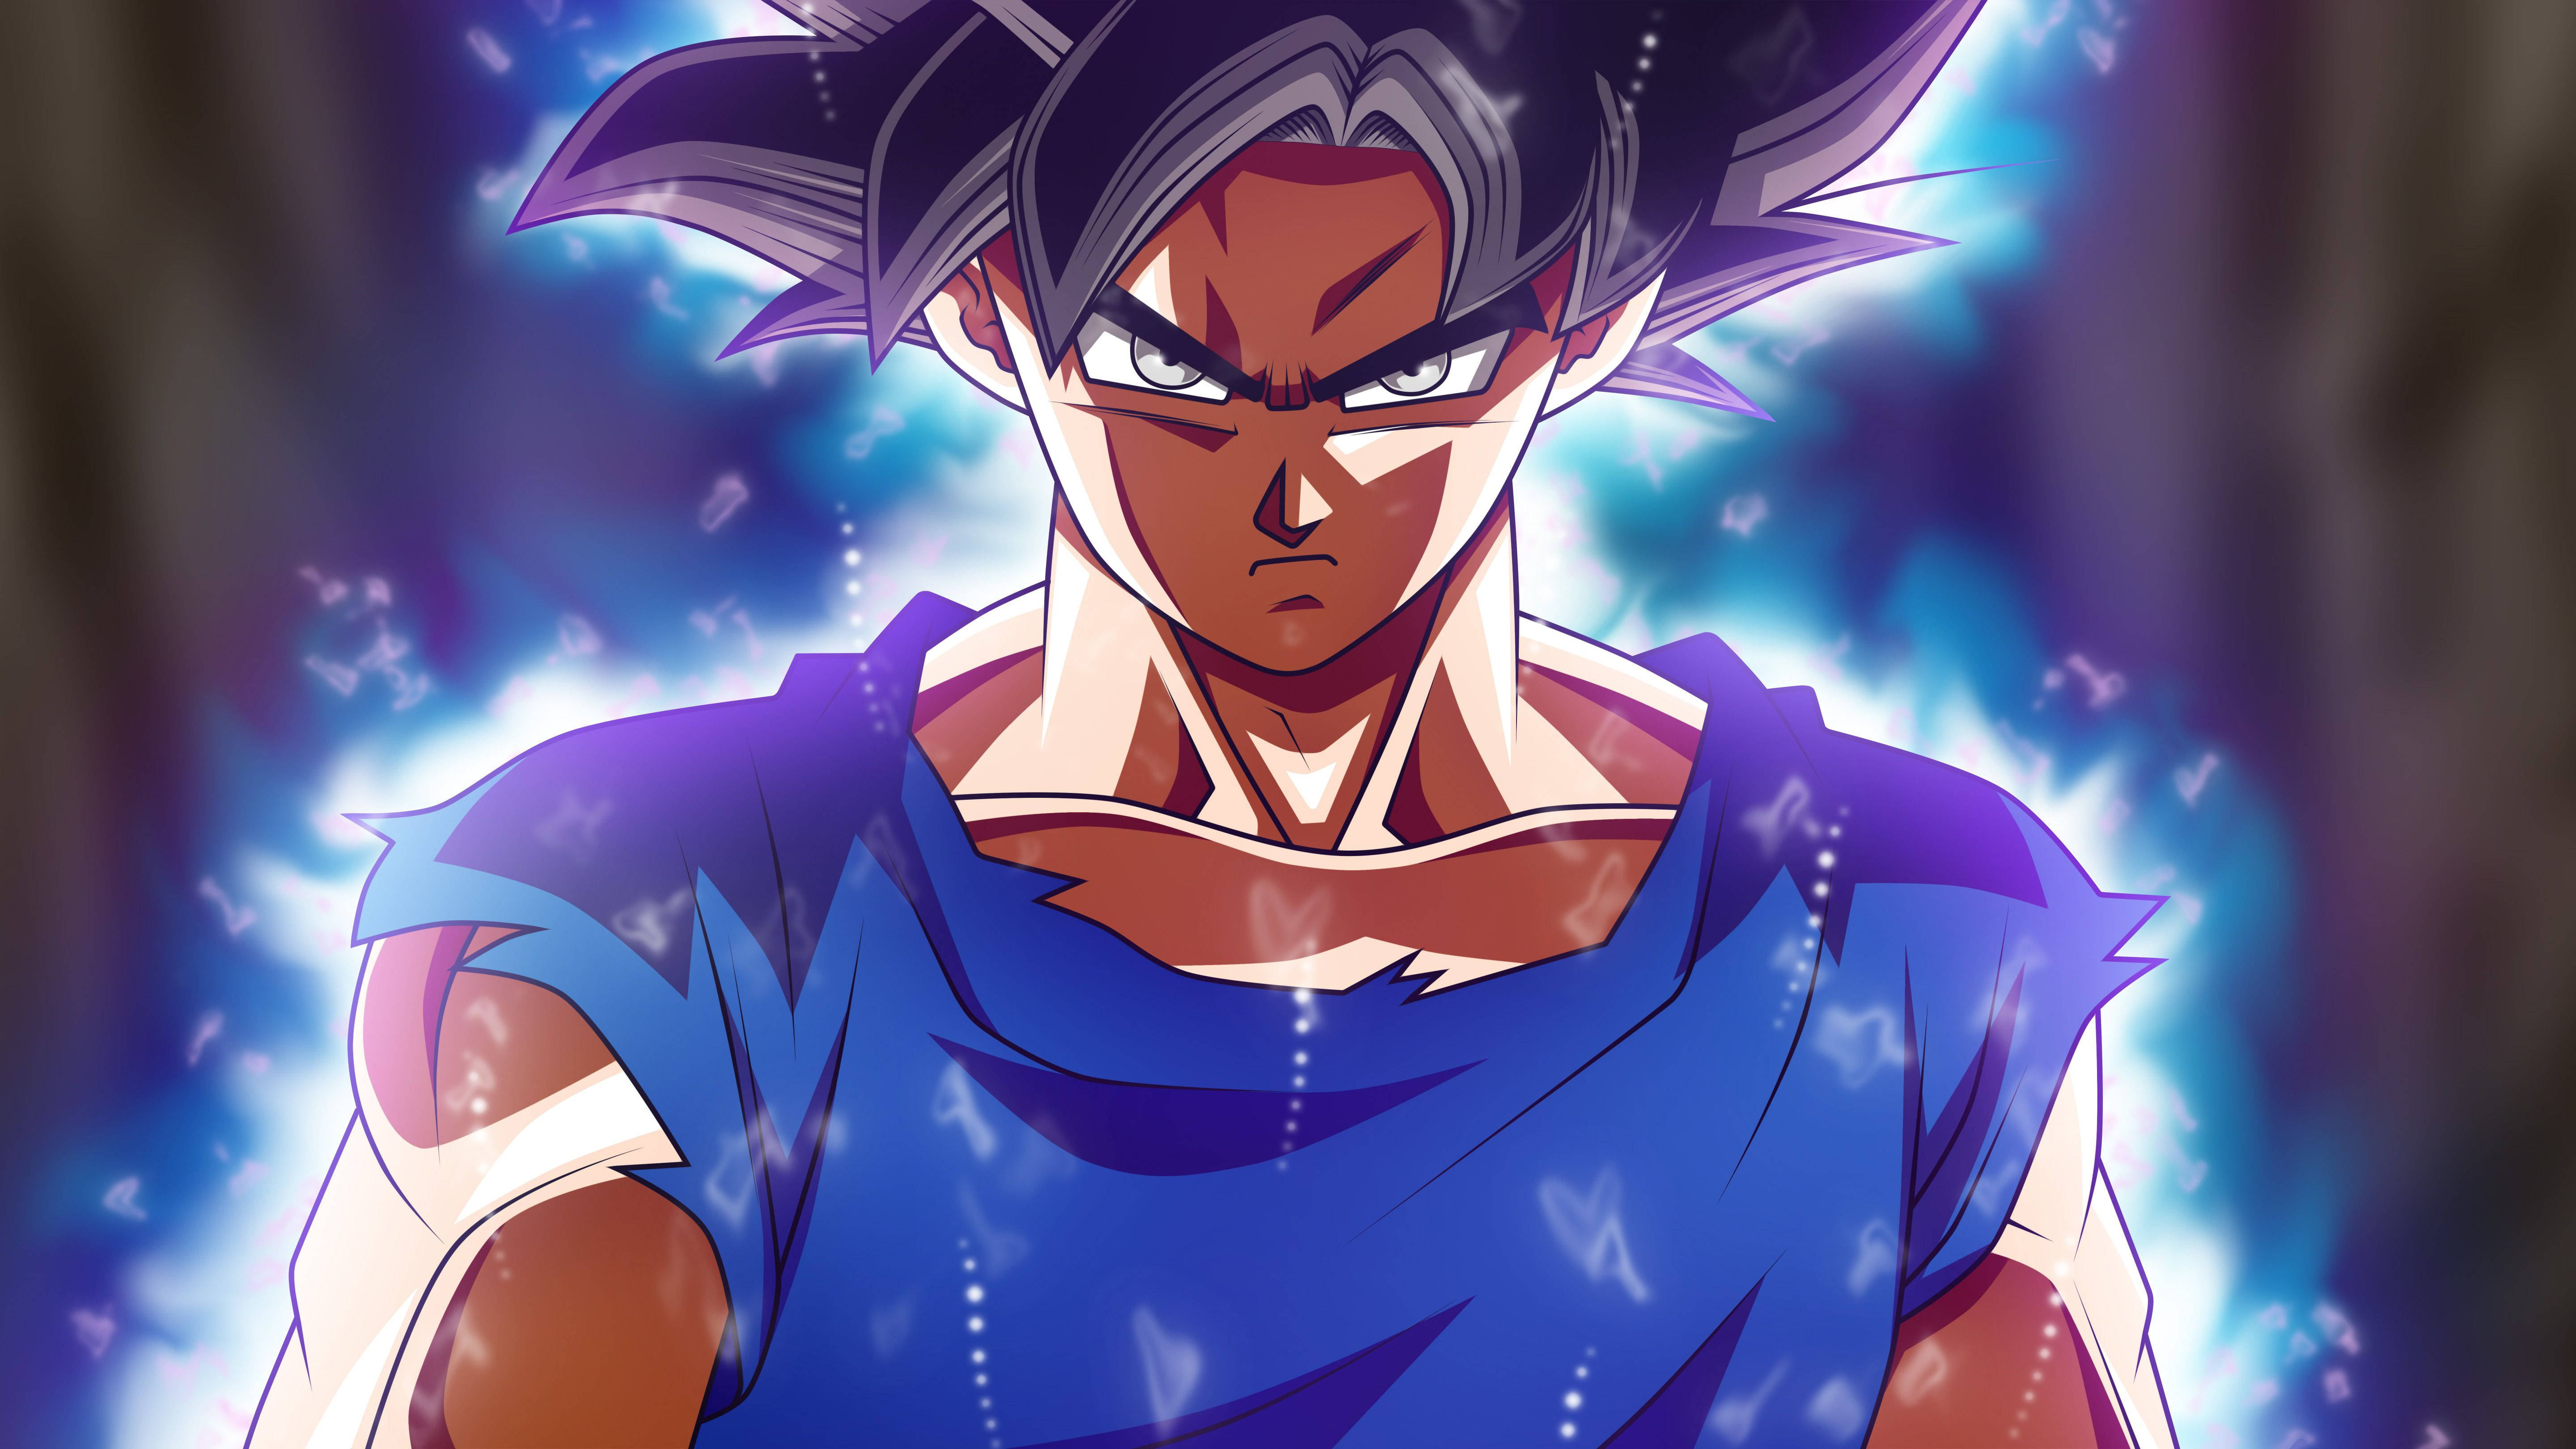 Amazing Speed Drawing Goku Manga [HD] - Video Dailymotion